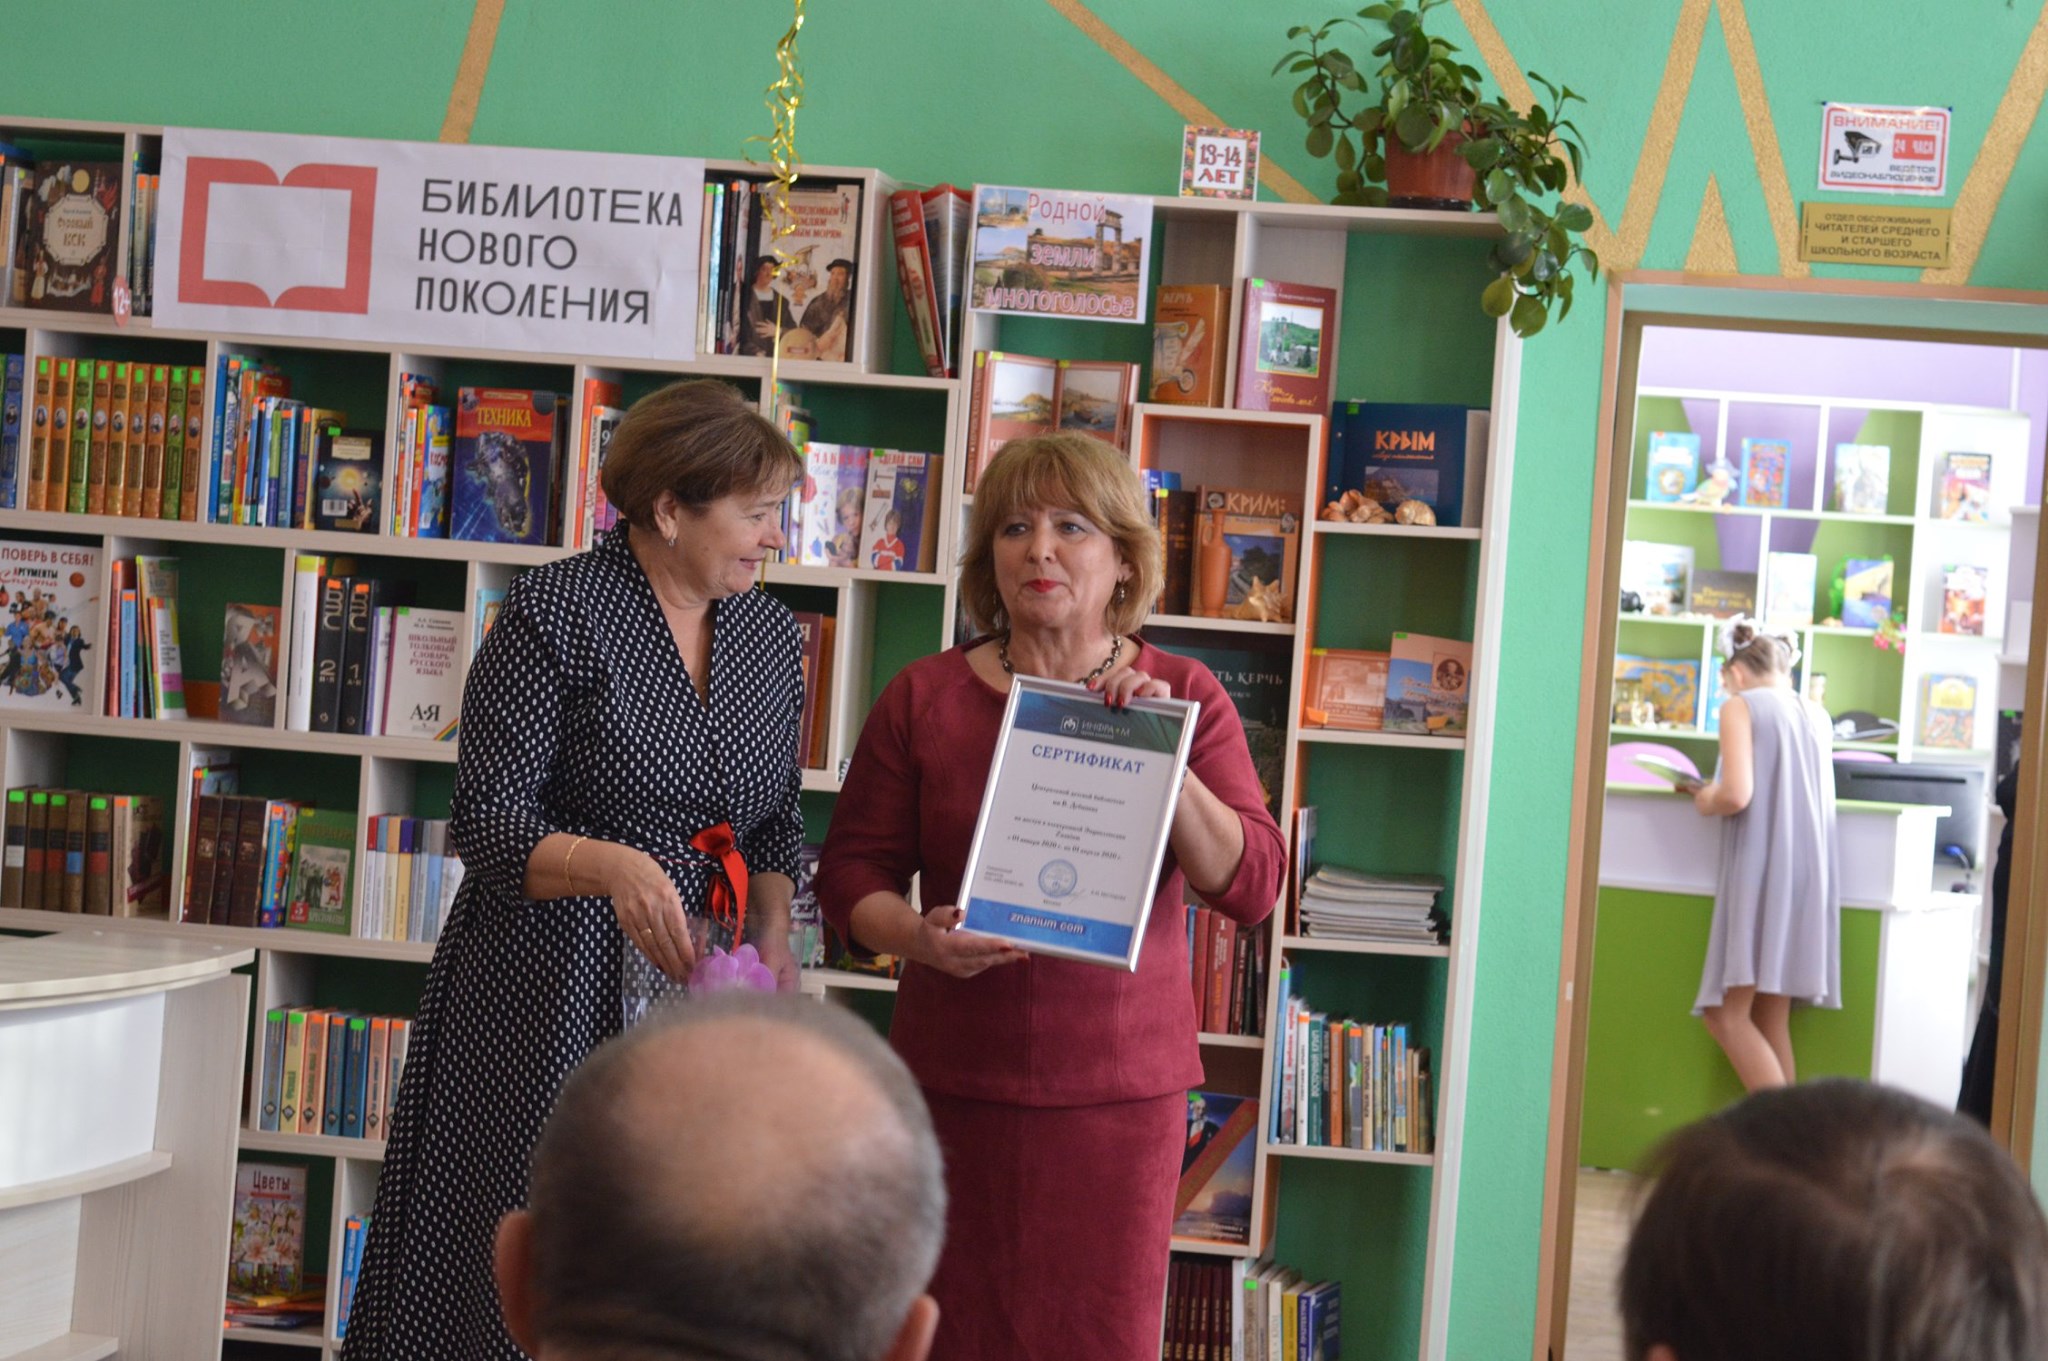 День открытия библиотеки нового поколения в Керчи!